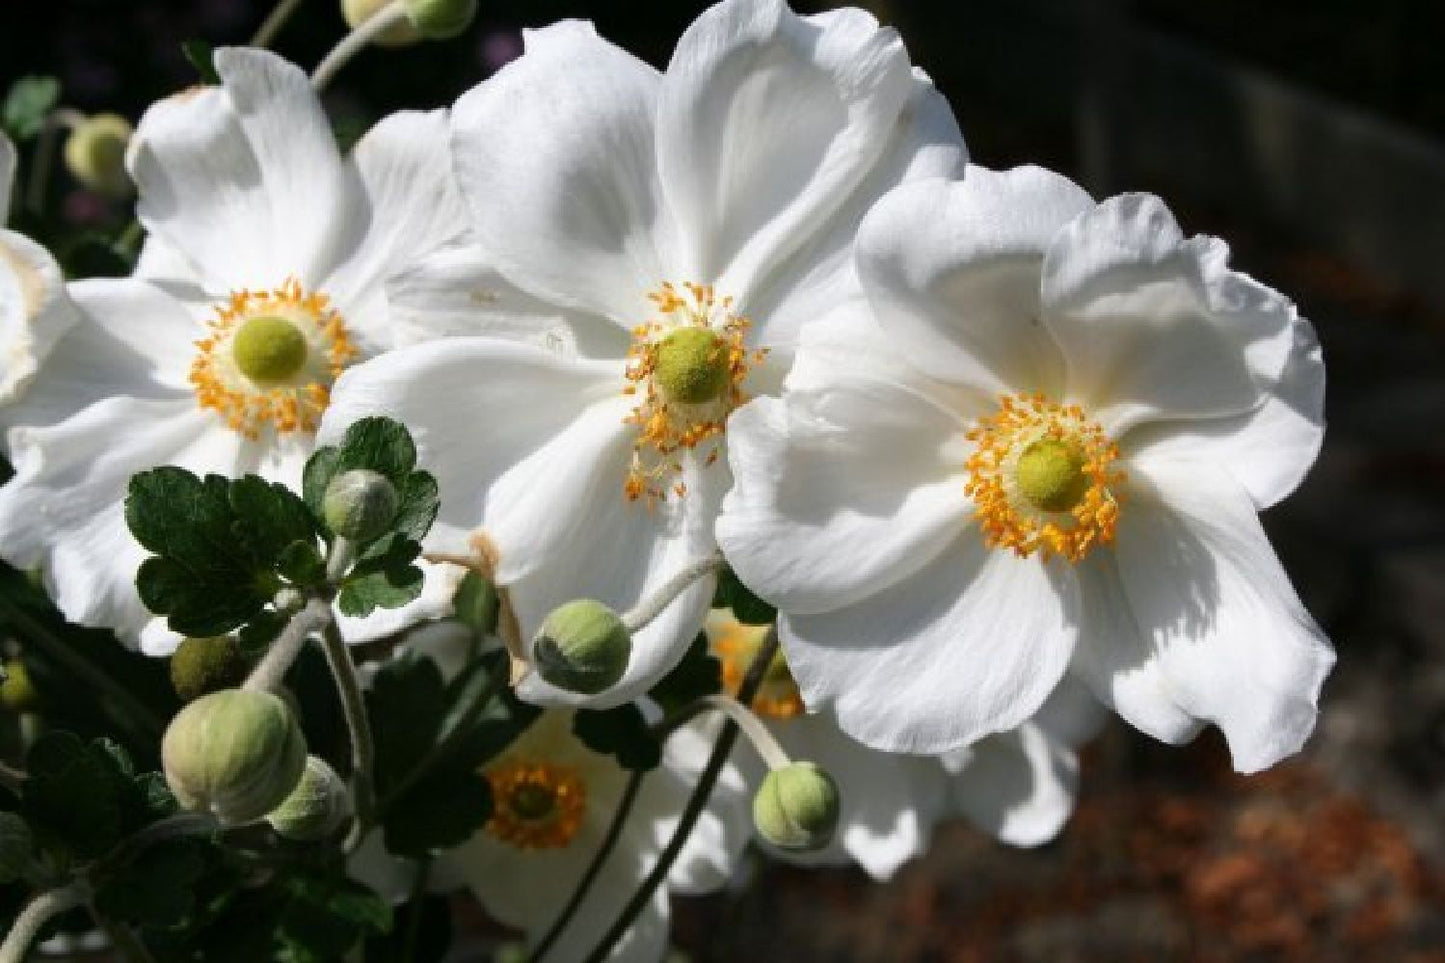 Romantischer Dauerblüher (Maximale Blütenfülle auf wenig Raum)